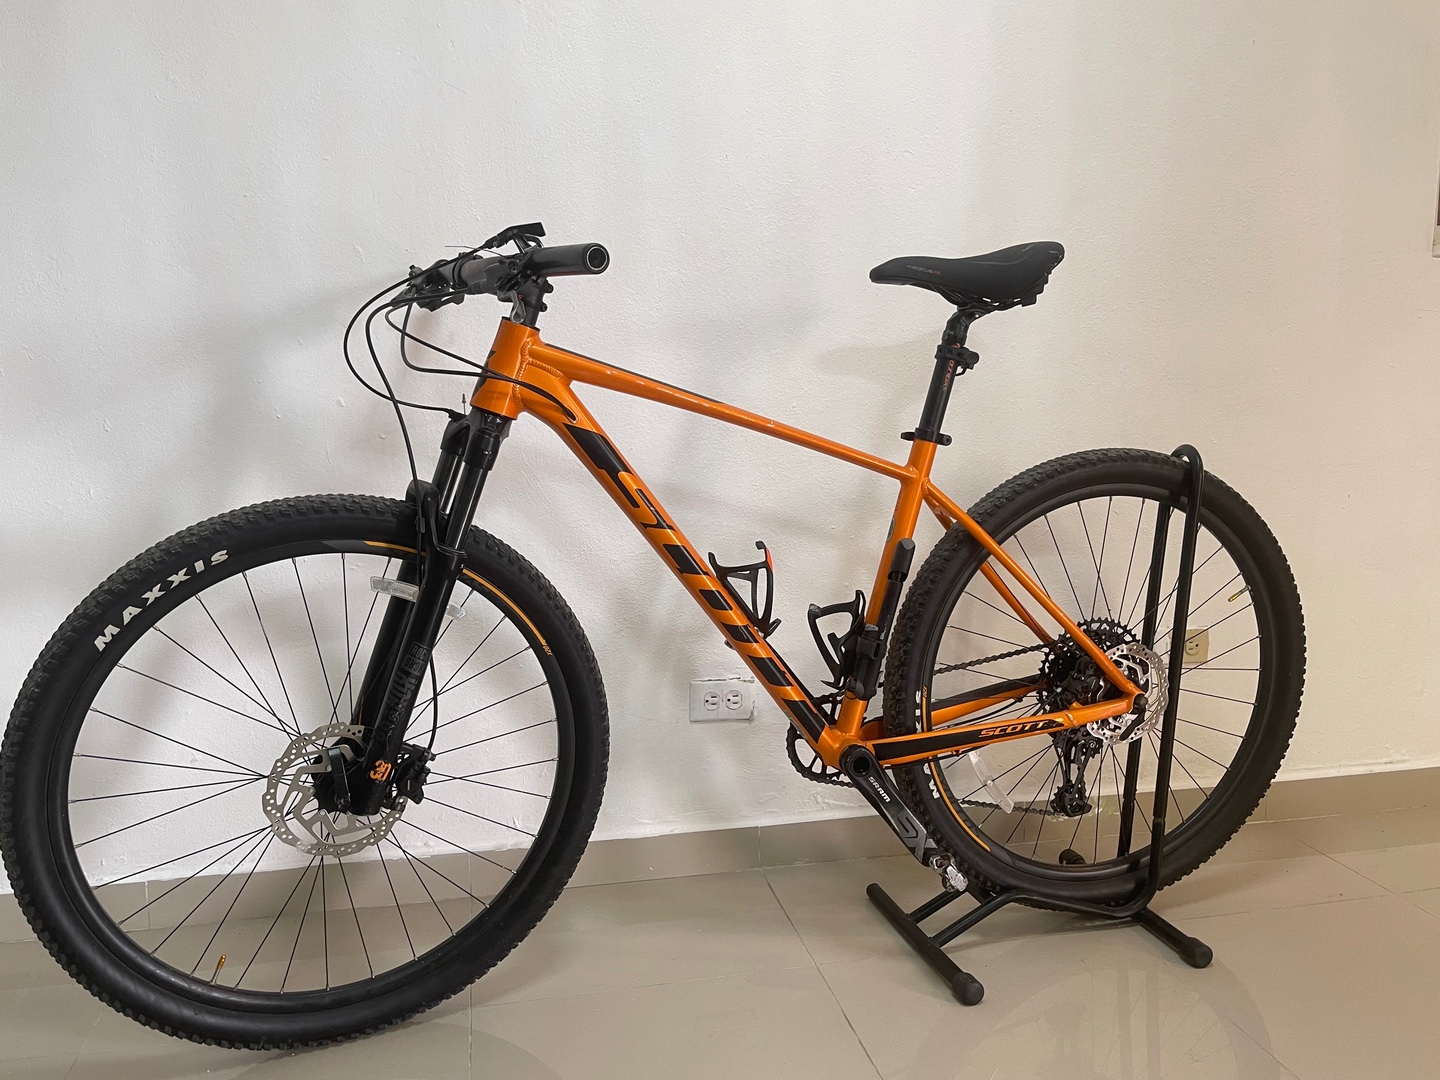 bicicletas y accesorios - Bicicleta Schott 970 color Naranja en Venta.  1